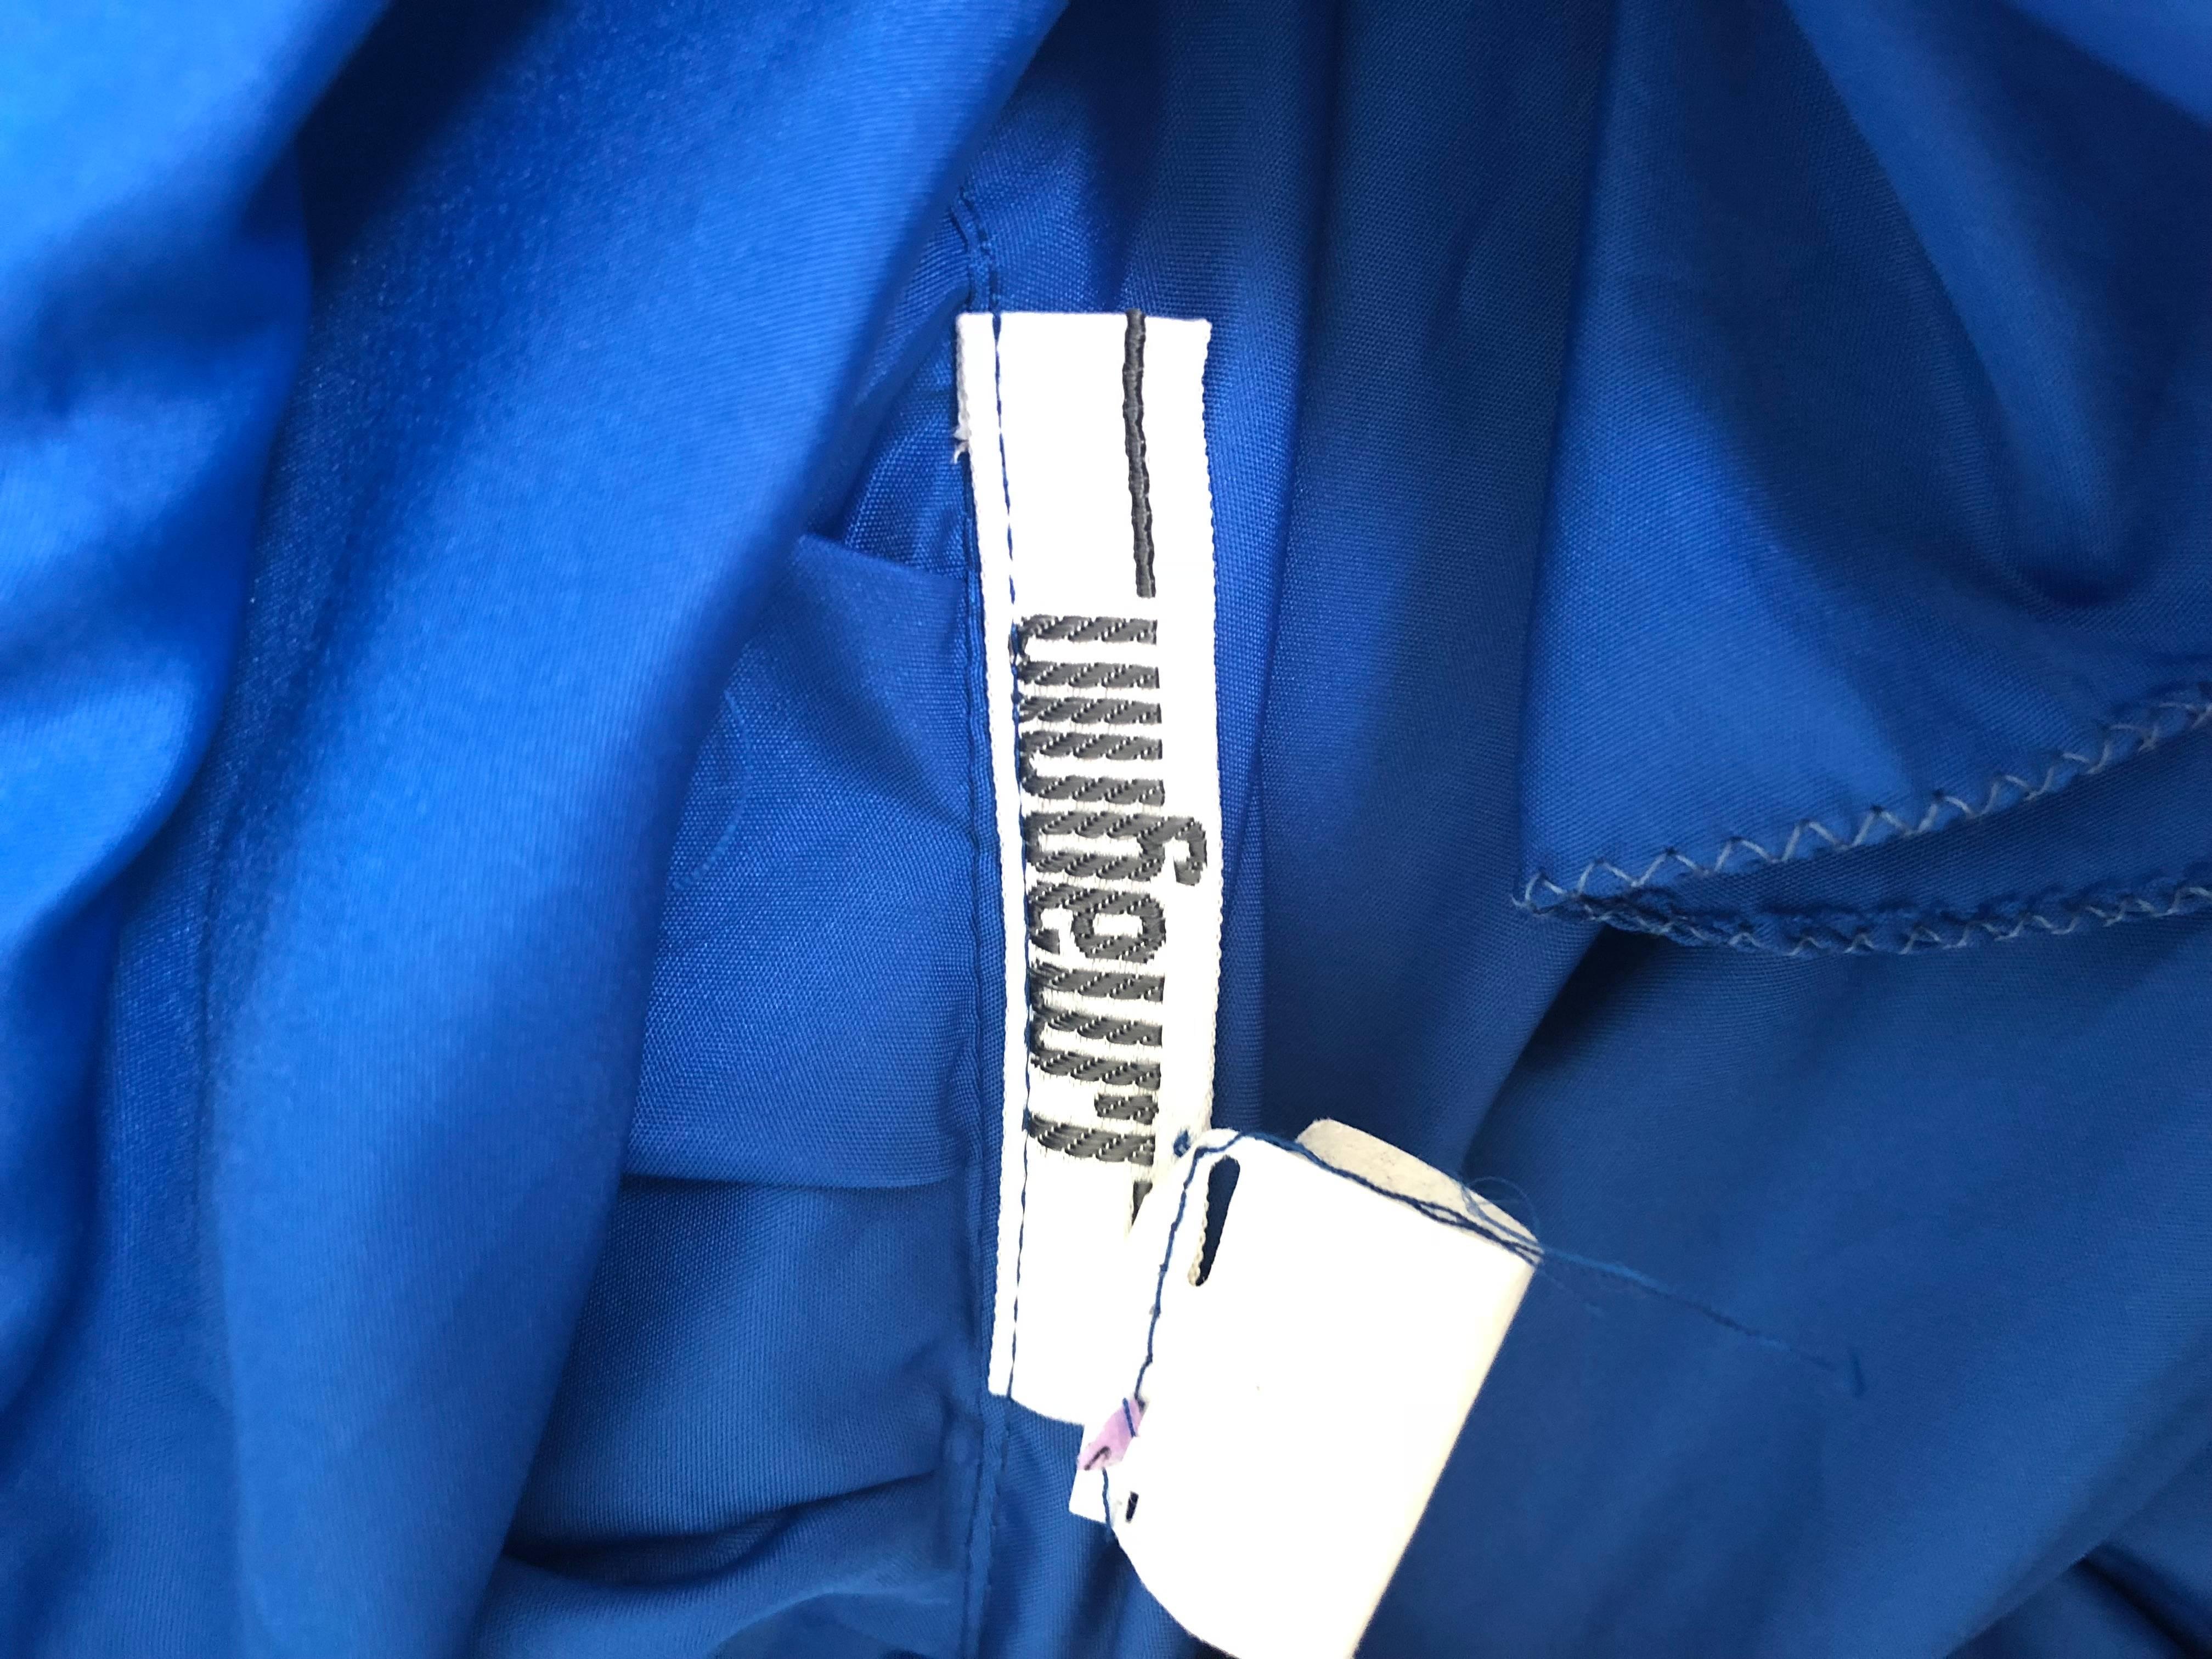 Fabuleuse robe de soirée Avant Garde en taffetas bleu roi du début des années 1980 I+I. La couleur bleu royal est vibrante. Détail origami à volants en haut de l'épaule gauche et en diagonale sur le devant. Fermeture éclair cachée sur le côté.